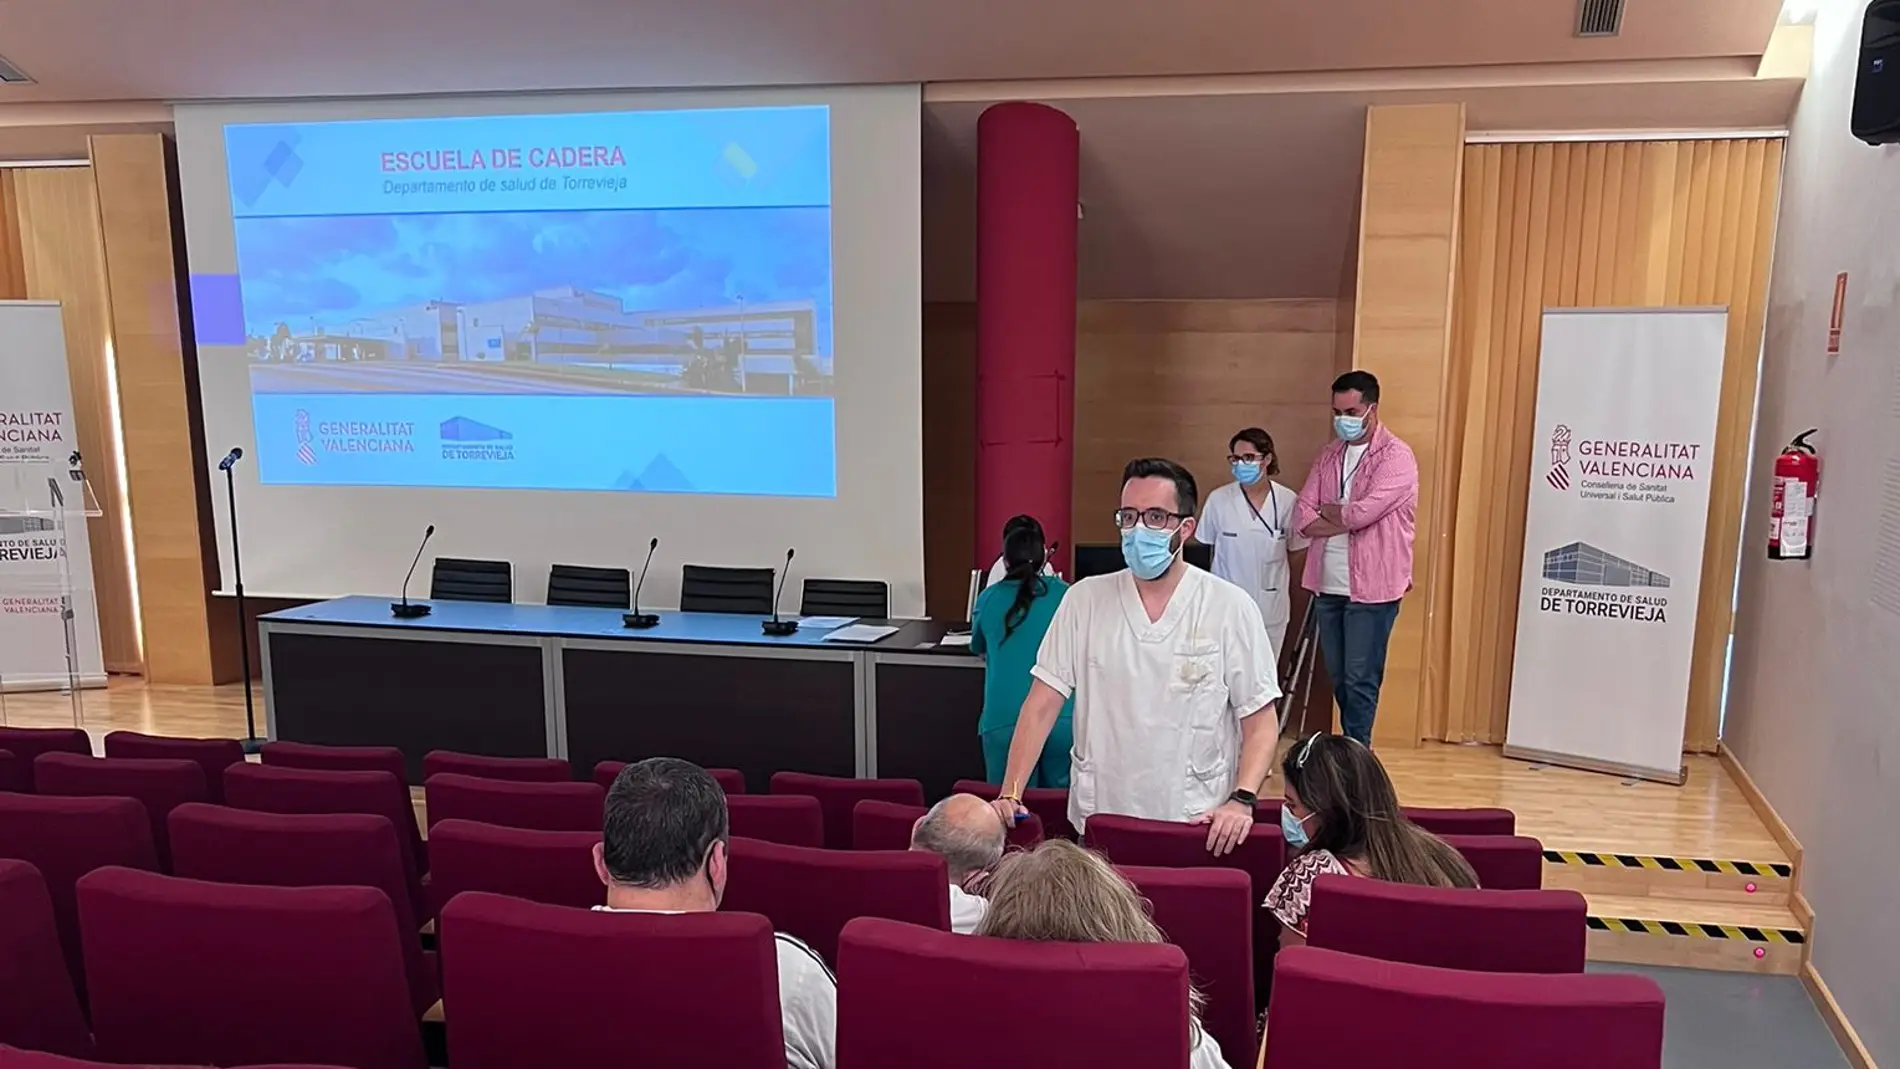 El hospital universitario de Torrevieja pone en marcha una escuela de cadera 